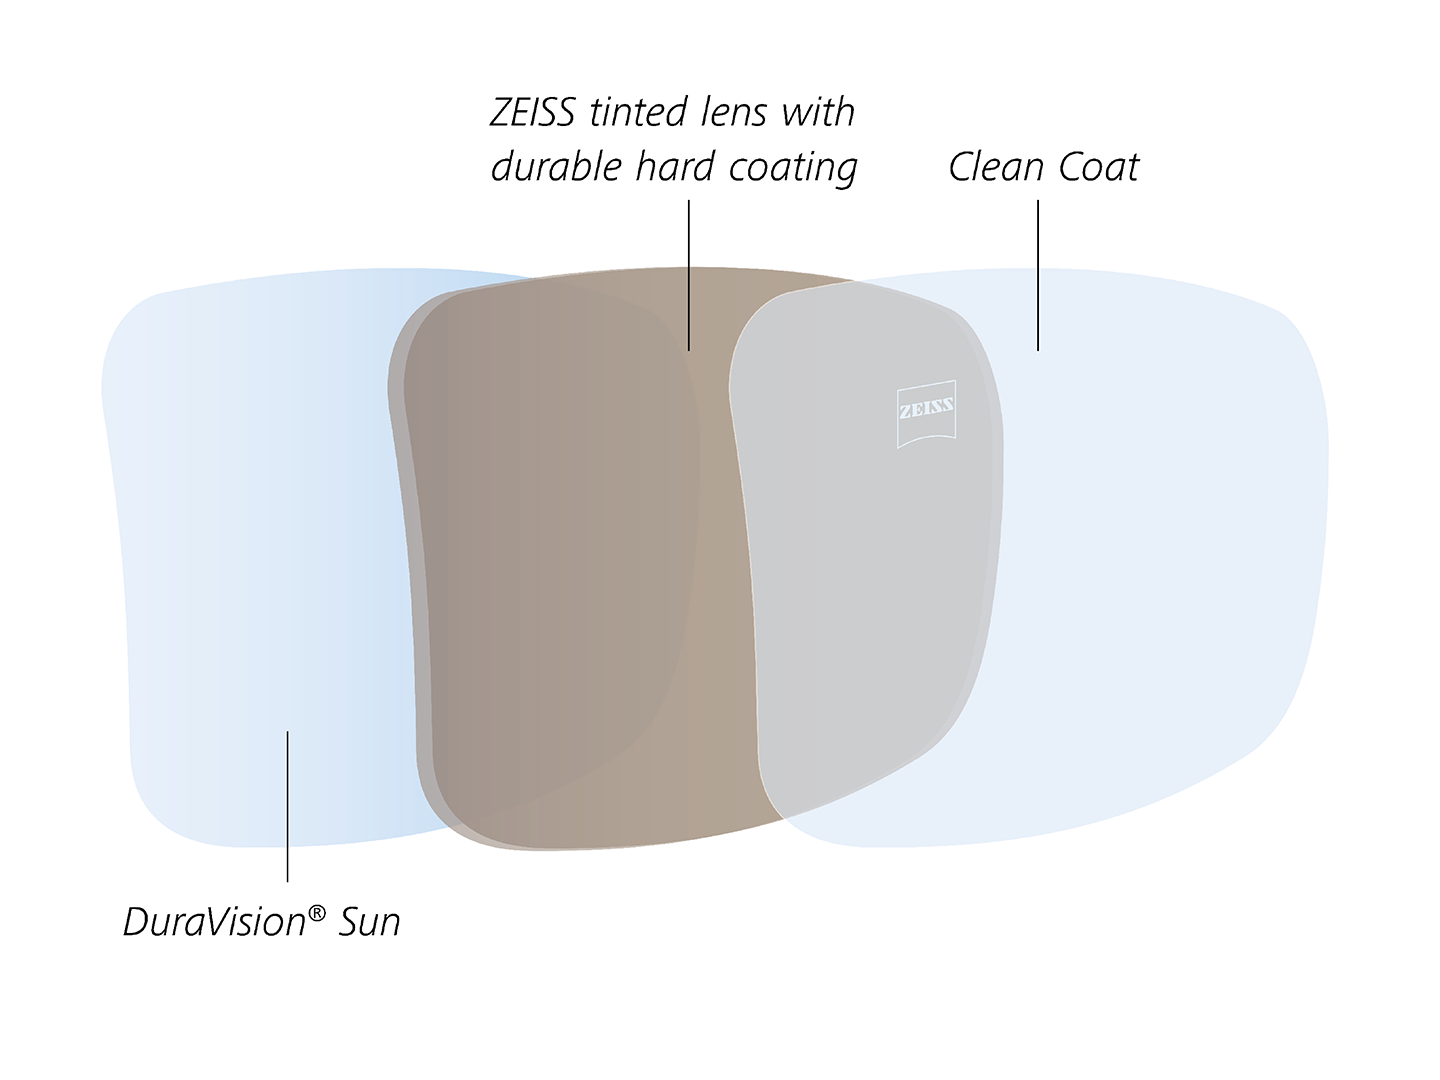 Ilustrace zadního antireflexního povrchu, který odpuzuje vodu a olej, vyvinutého speciálně pro barevné brýlové čočky. 